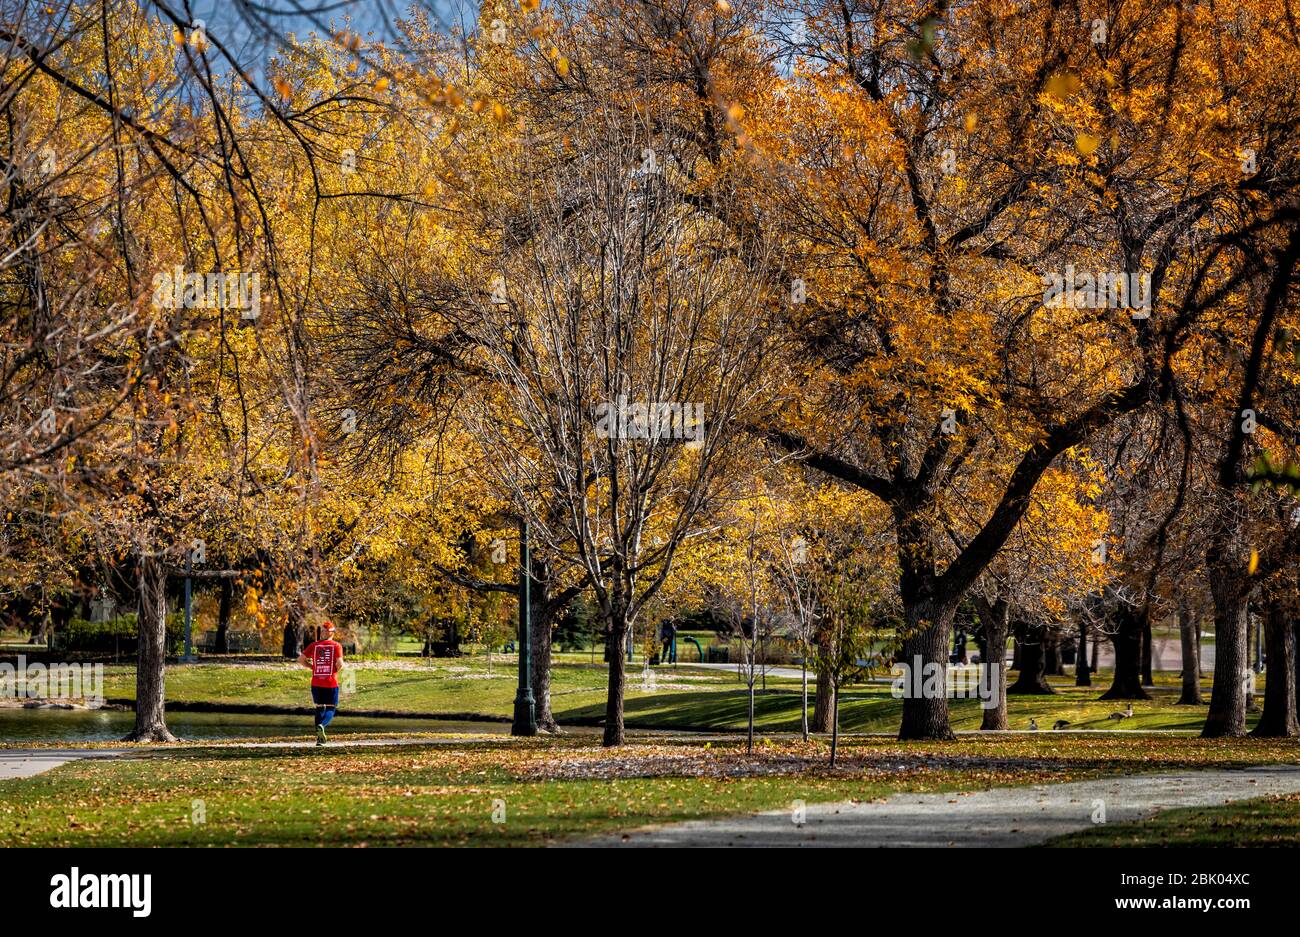 A runner jogs through the Denver City Park among fall colors in Denver, Colorado, USA. Stock Photo